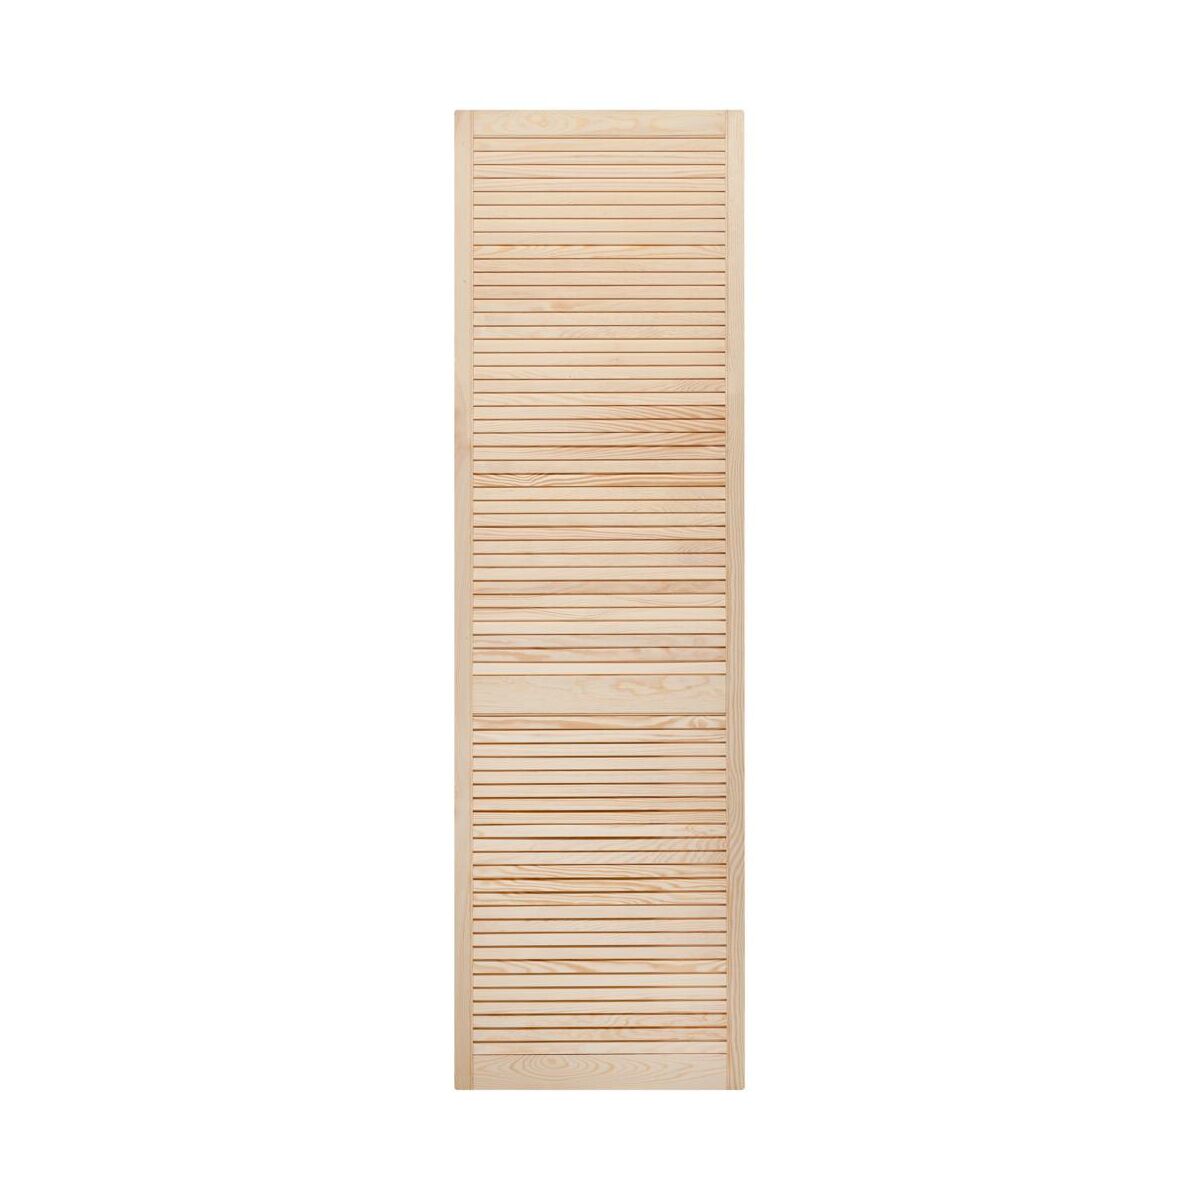 Drzwiczki ażurowe 201.3 x 59.4 cm Floorpol